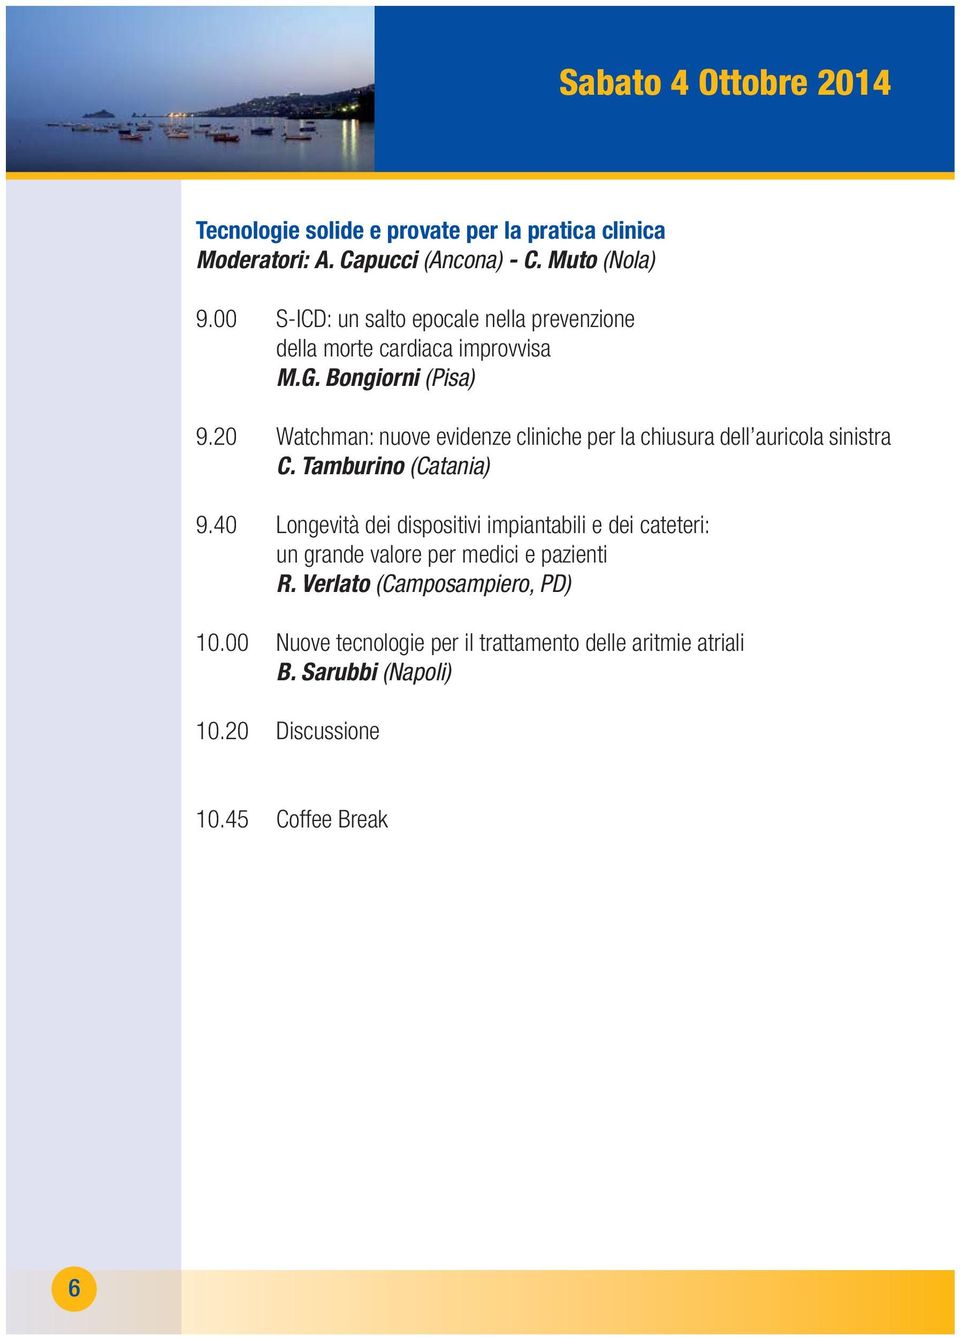 20 Watchman: nuove evidenze cliniche per la chiusura dell auricola sinistra C. Tamburino (Catania) 9.